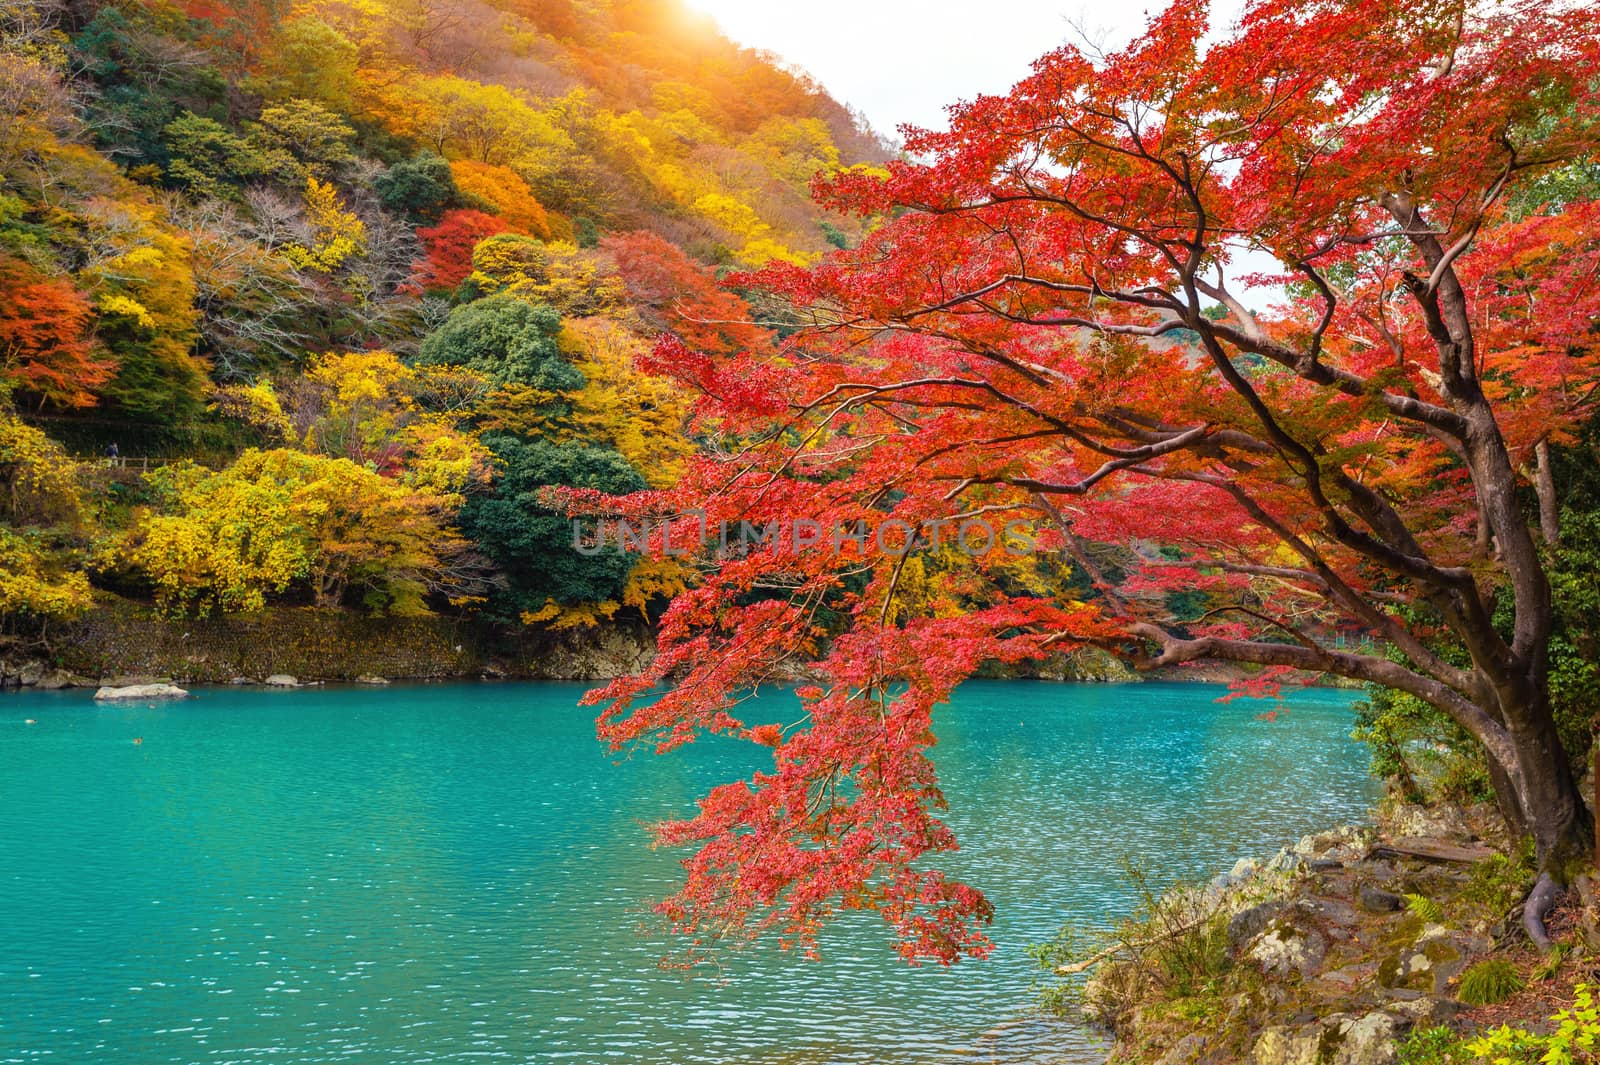 Arashiyama in autumn season along the river in Kyoto, Japan. by gutarphotoghaphy